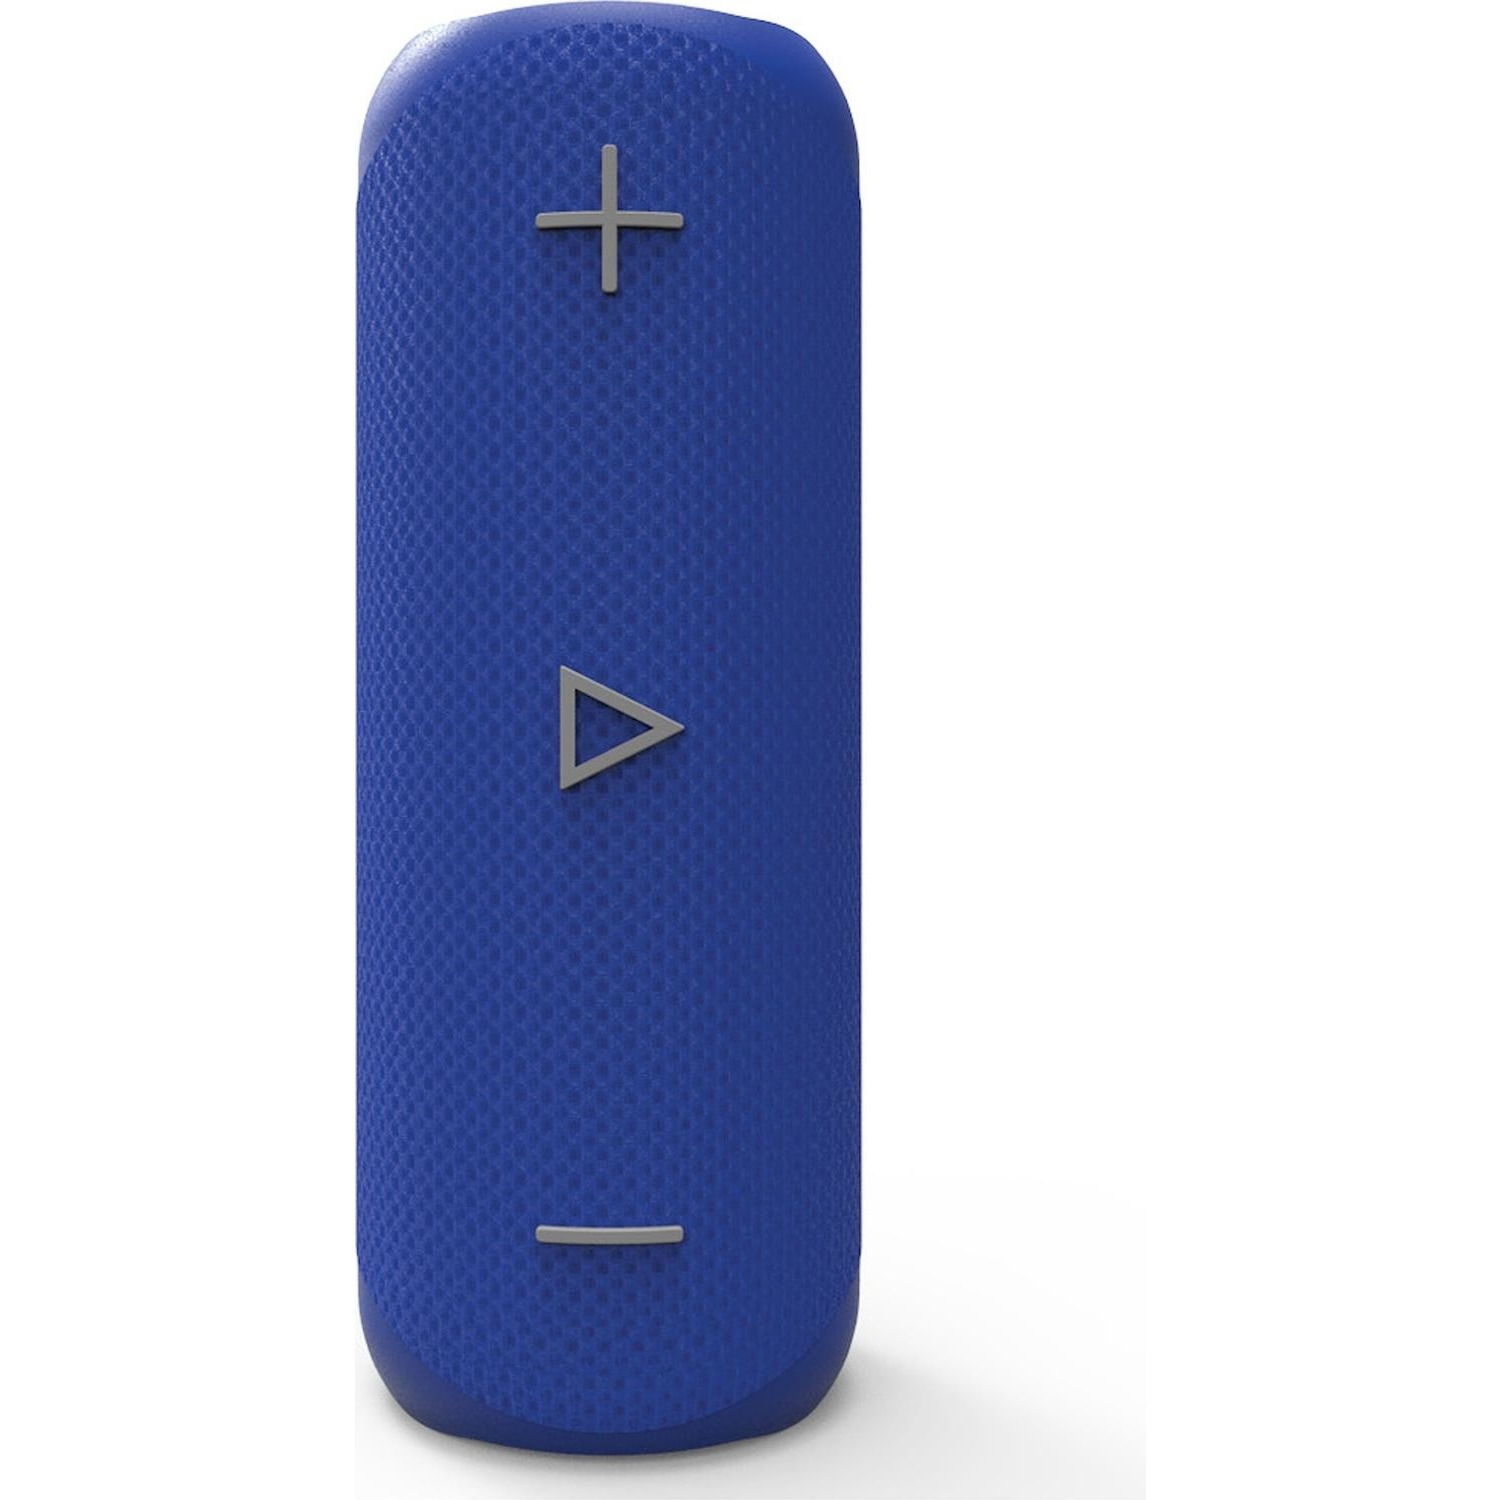 Immagine per Speaker bluetooth Sharp GX-BT280BL colore blue da DIMOStore